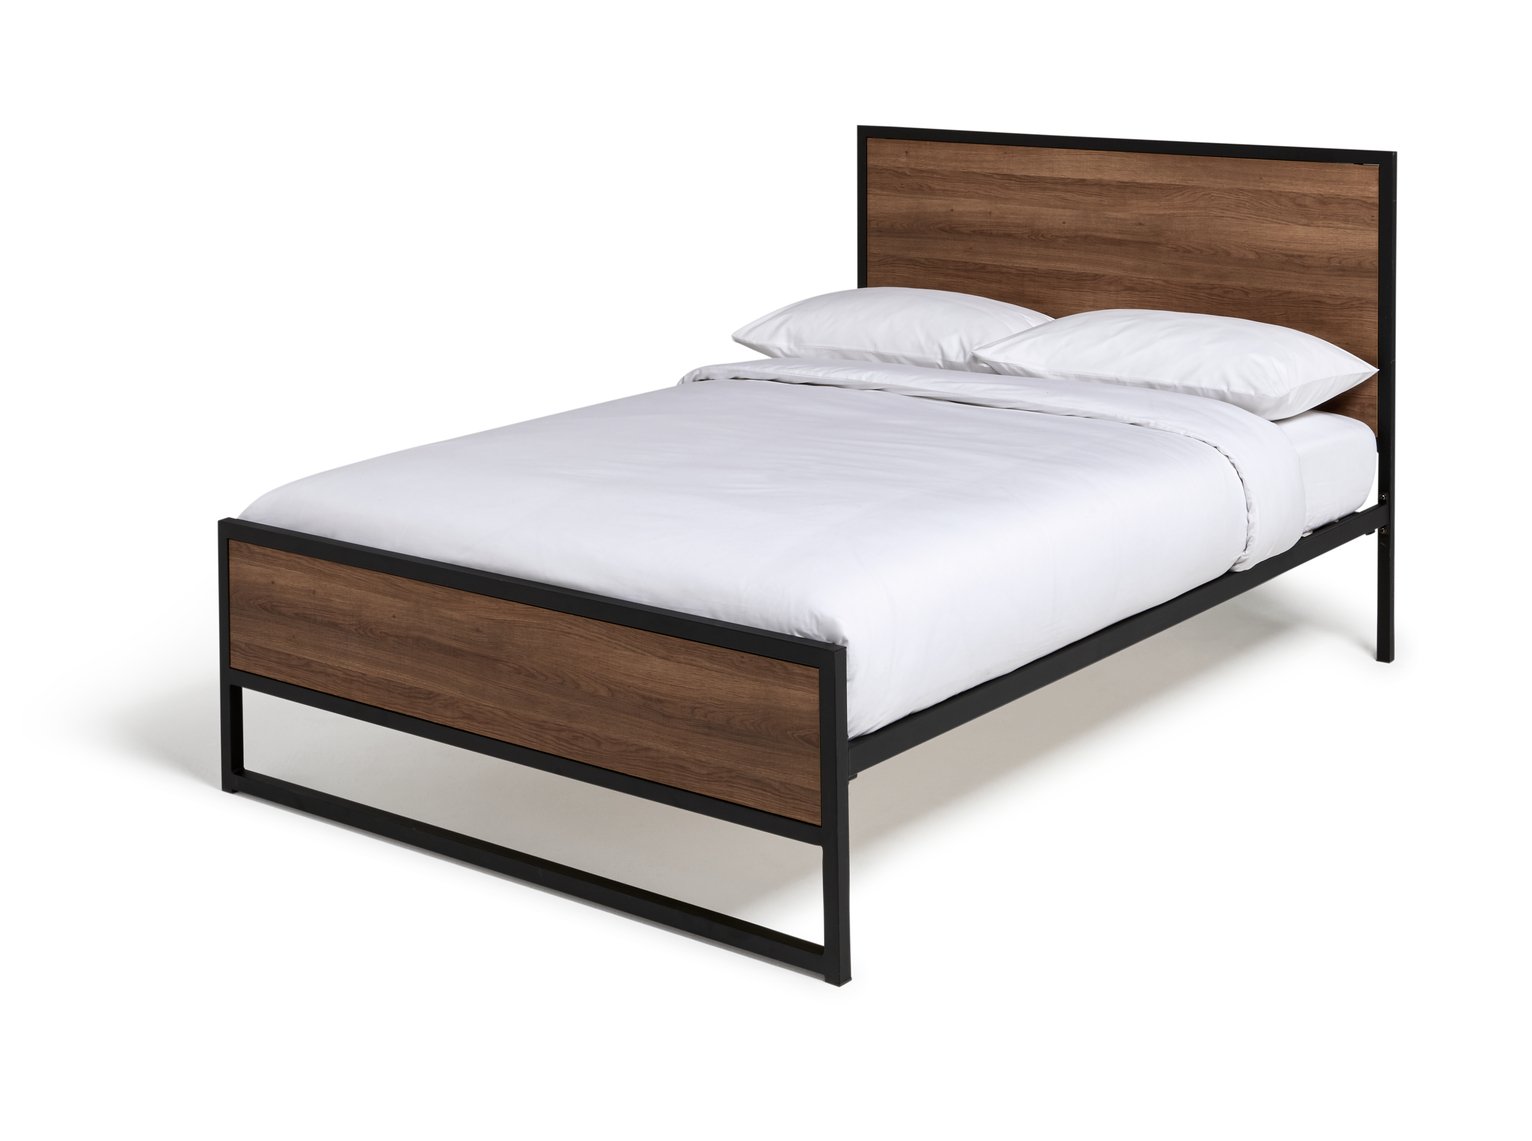 Habitat Nomad Kingsize Metal Bed Frame - Black & Wood